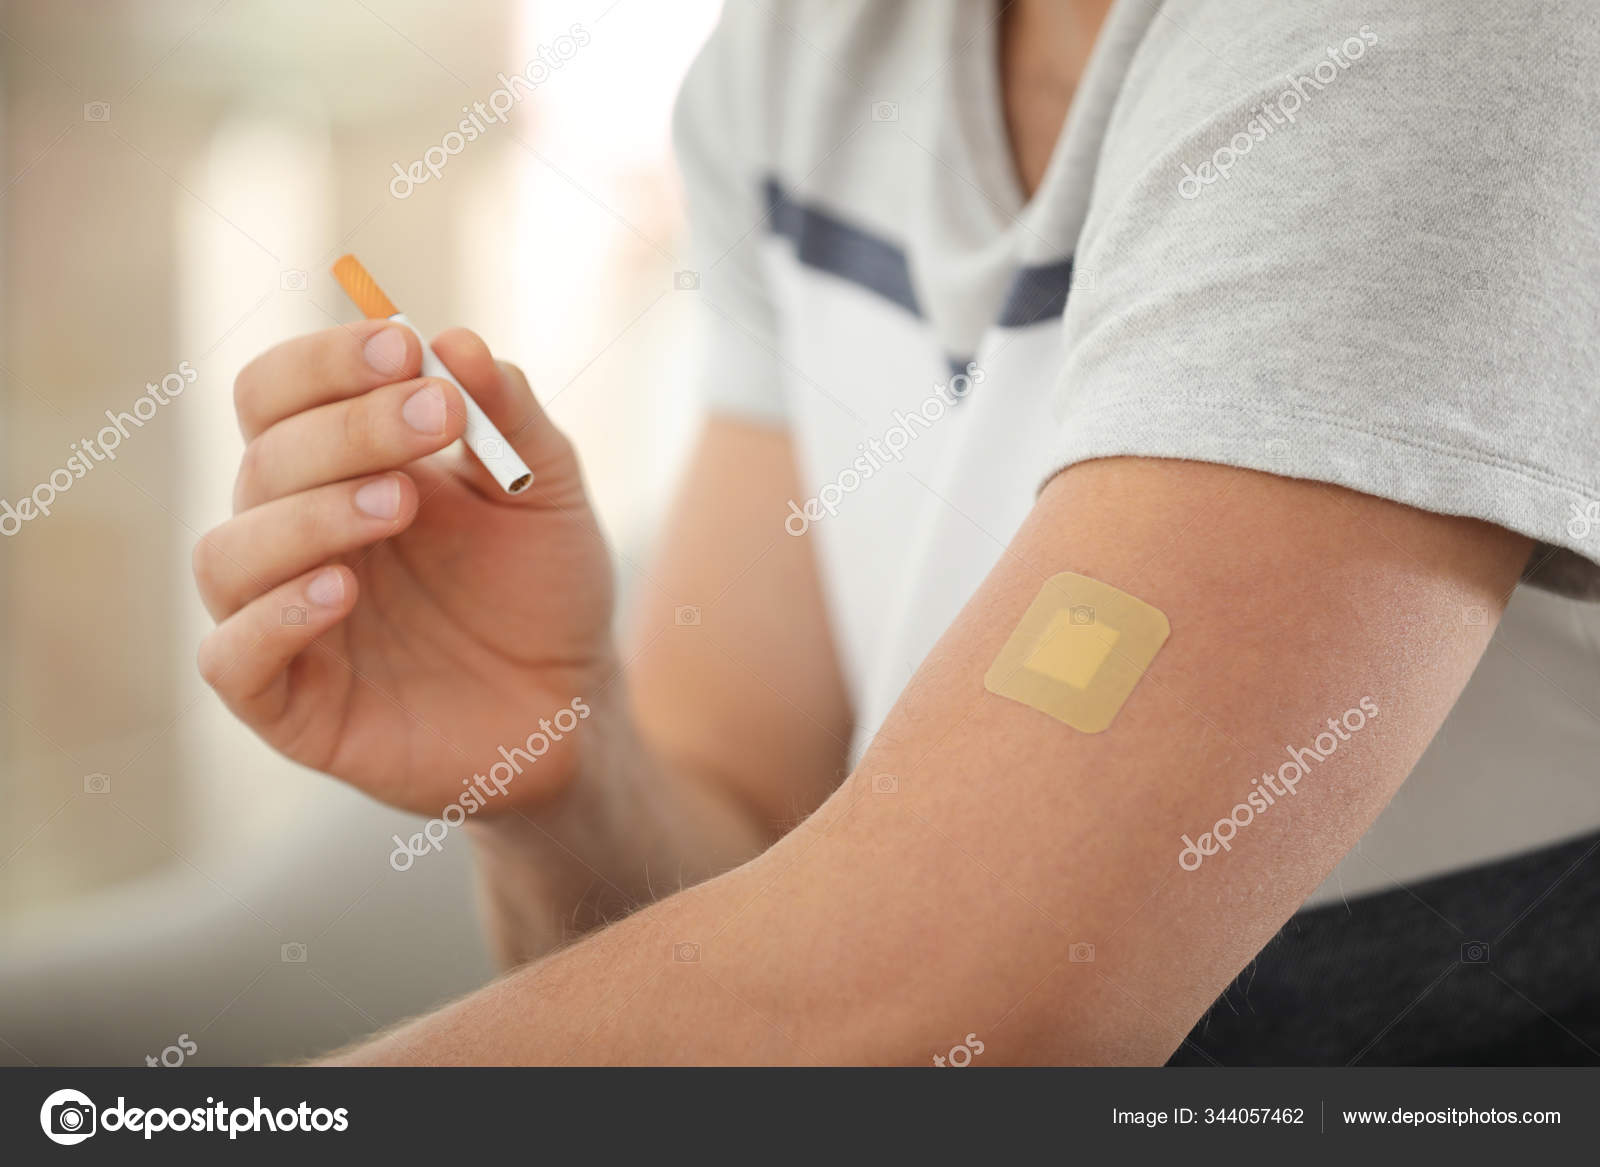 https://st3.depositphotos.com/16122460/34405/i/1600/depositphotos_344057462-stock-photo-man-nicotine-patch-cigarette-closeup.jpg